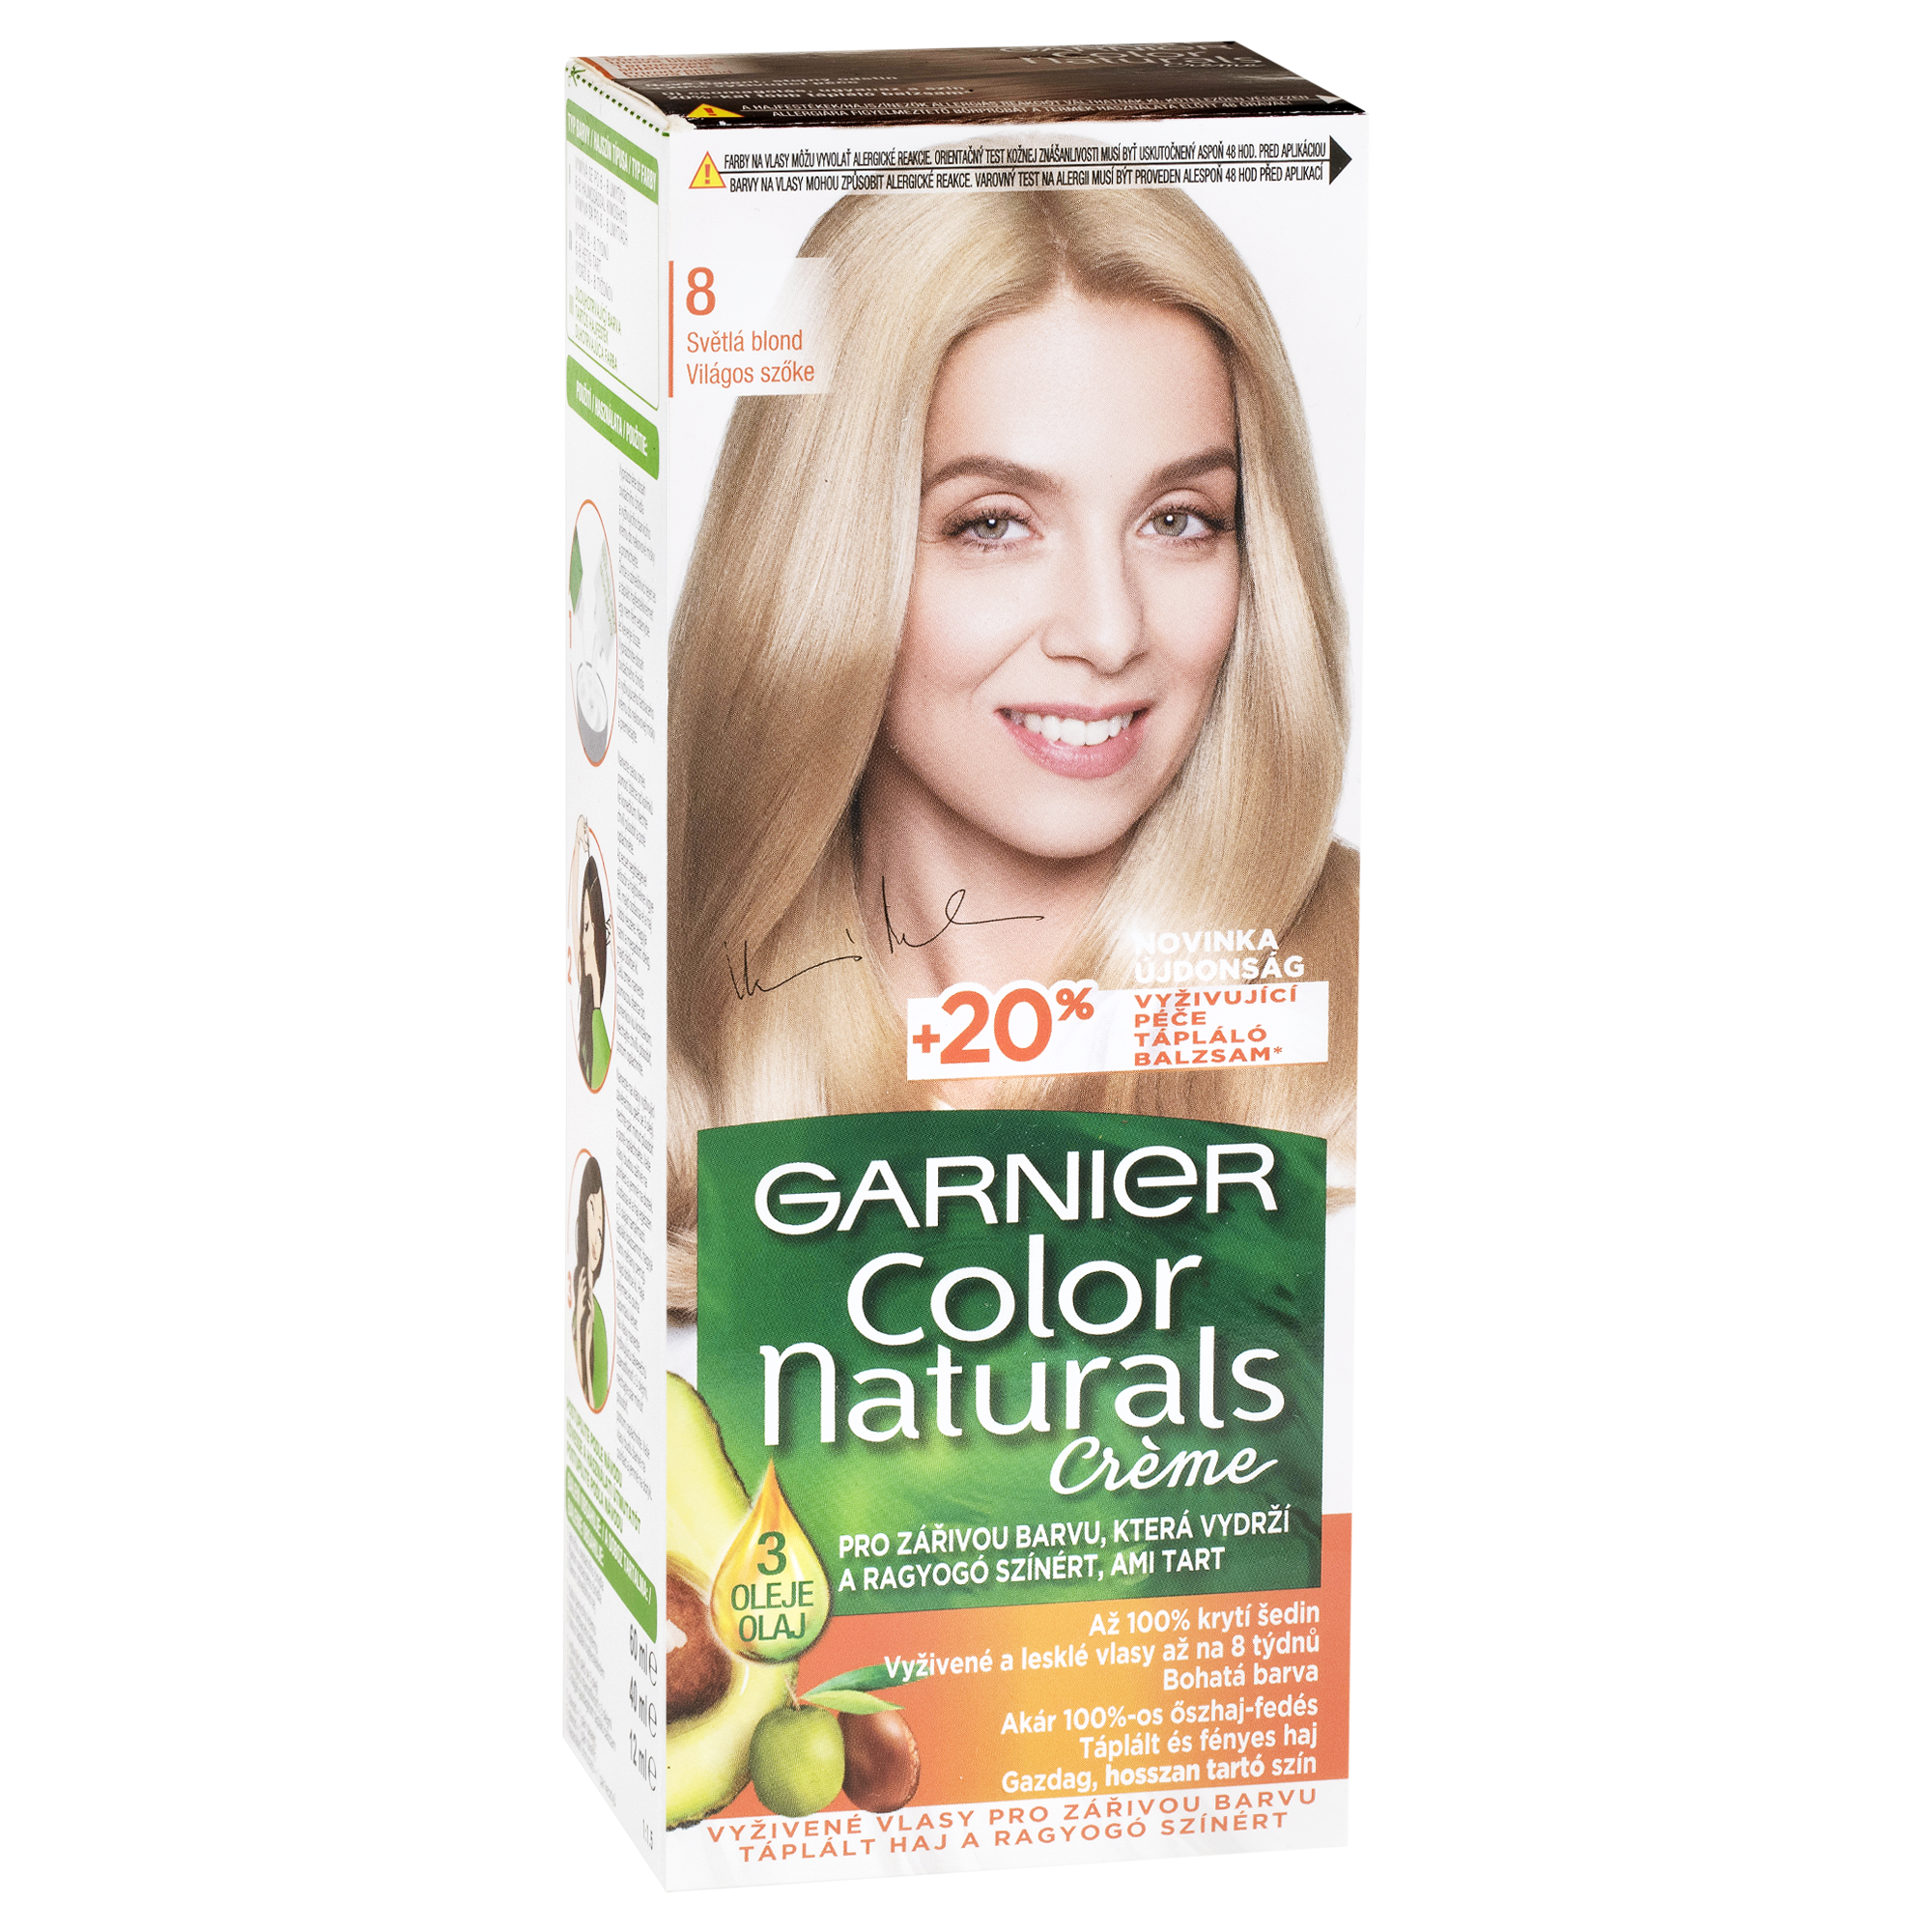 Garnier Color Naturals Creme dlouhotrvající vyživující barva odstín Světlá blond 8